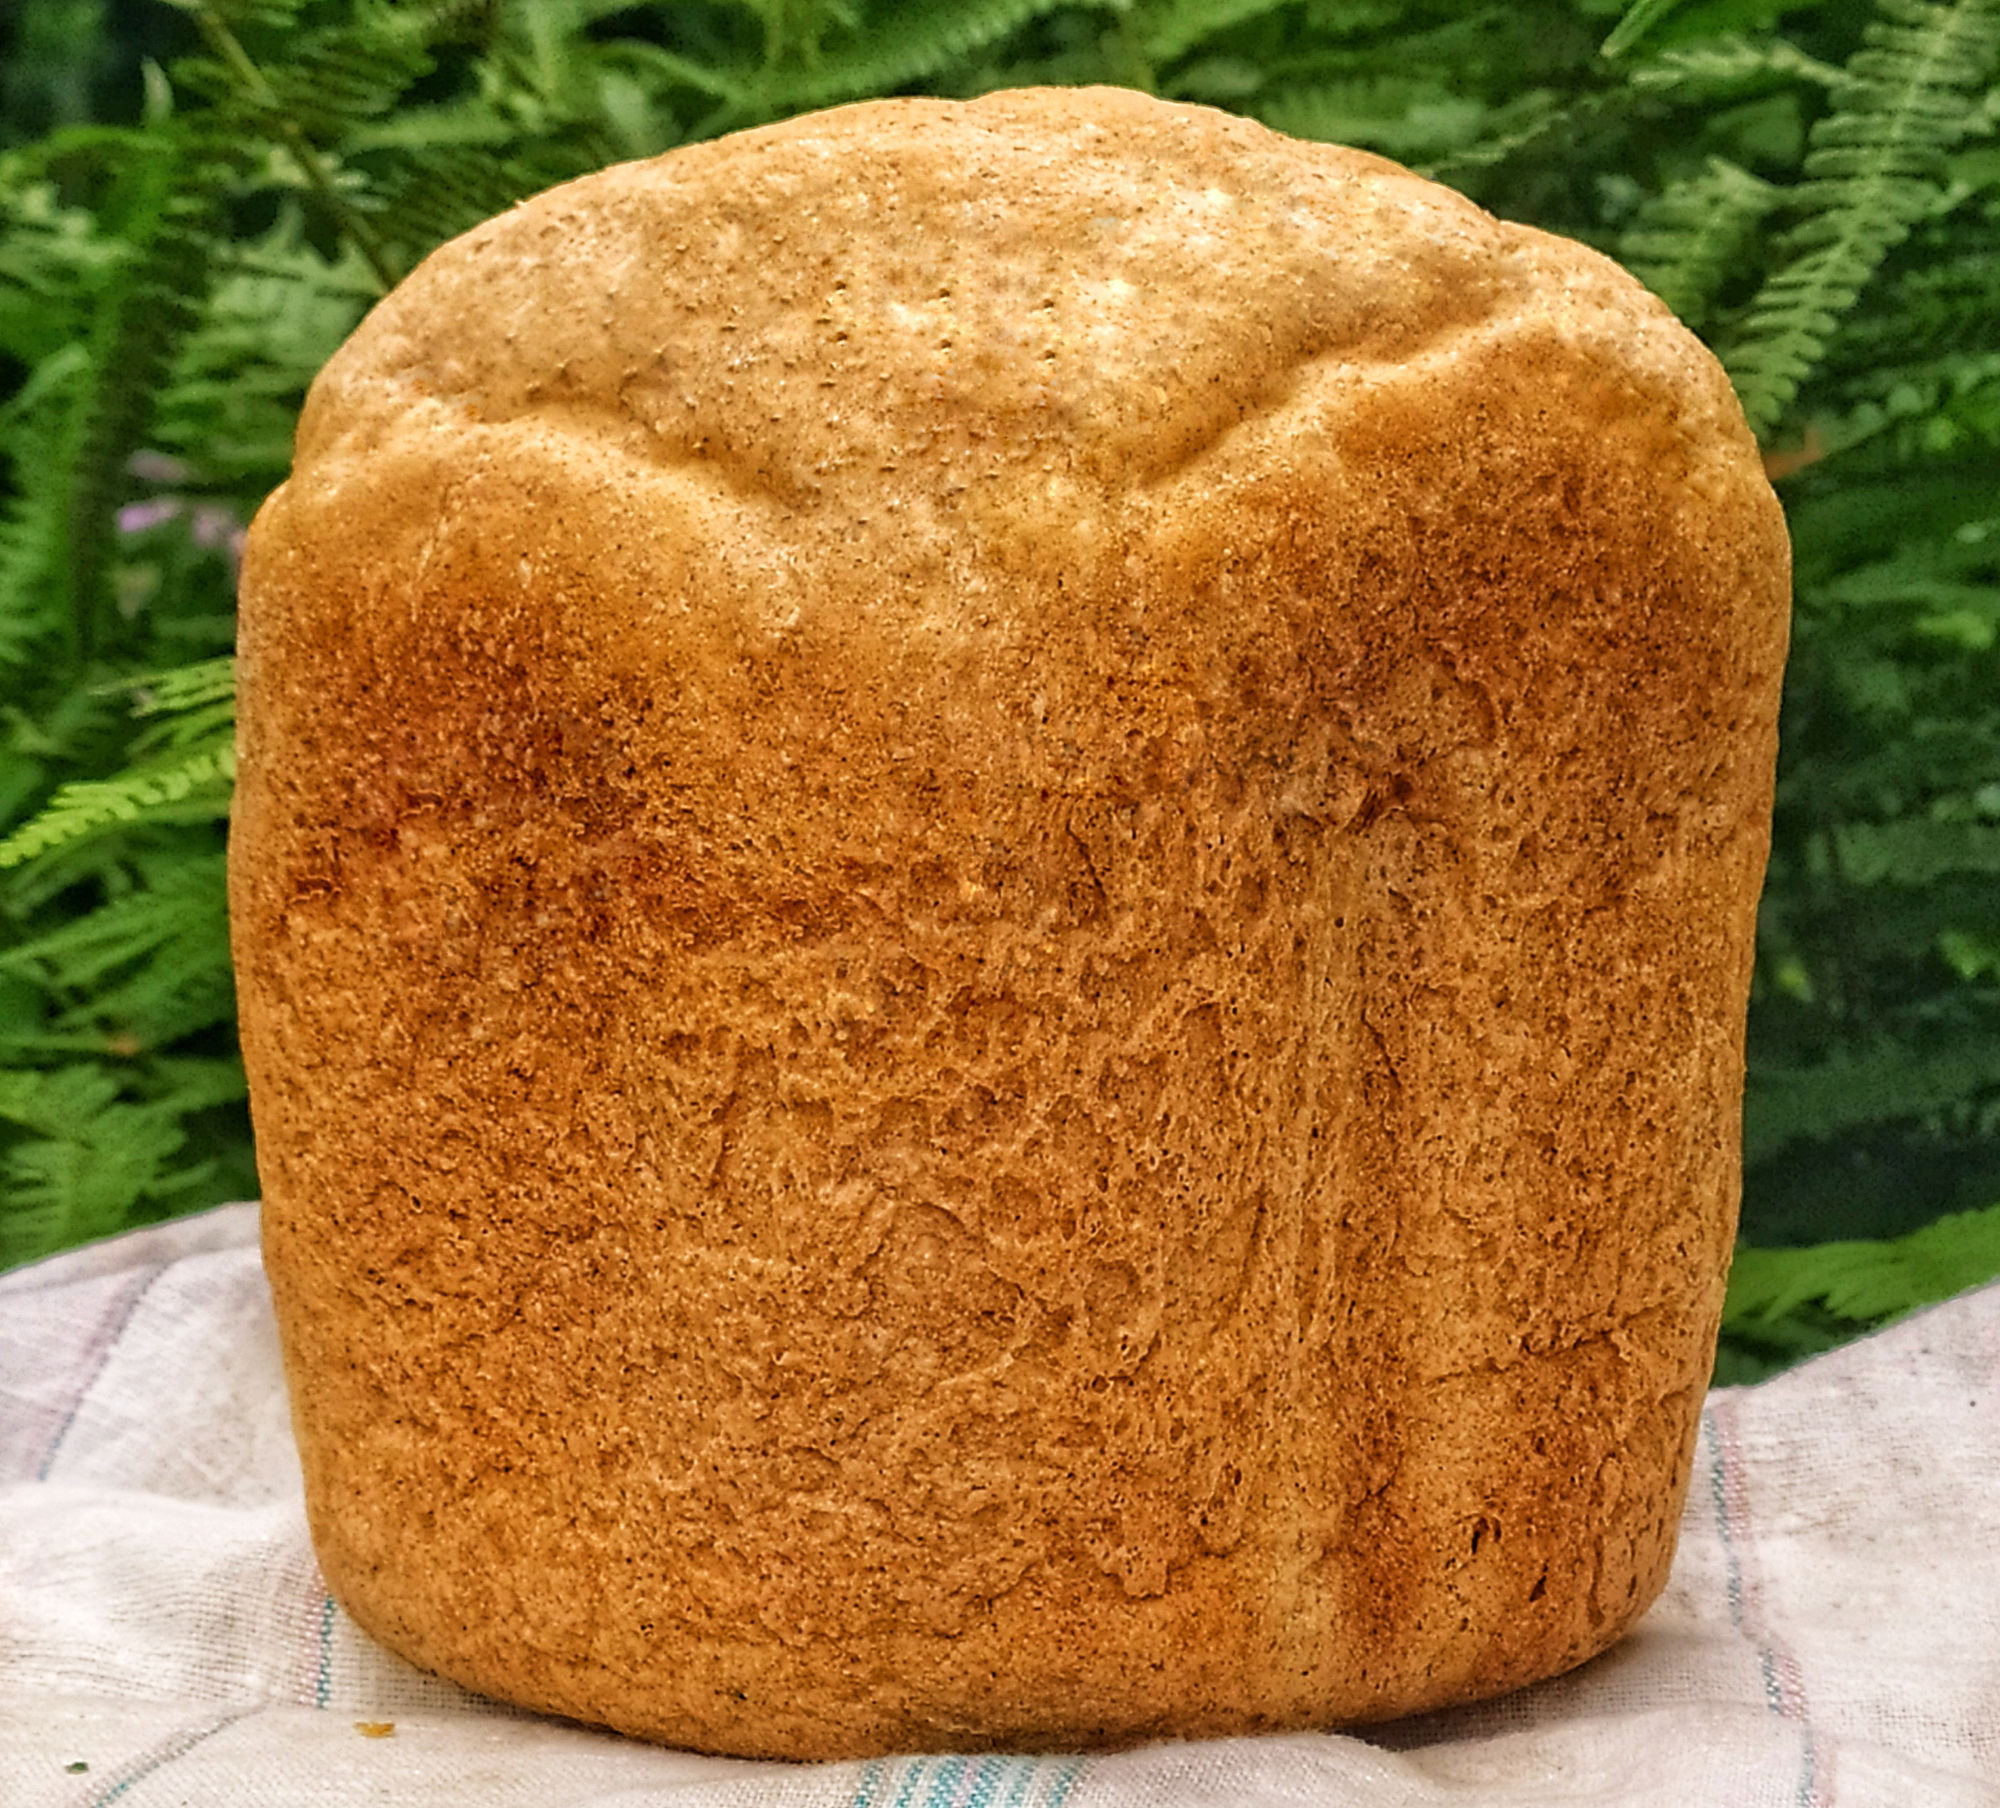 Простой рецепт хлеба из цельнозерновой муки